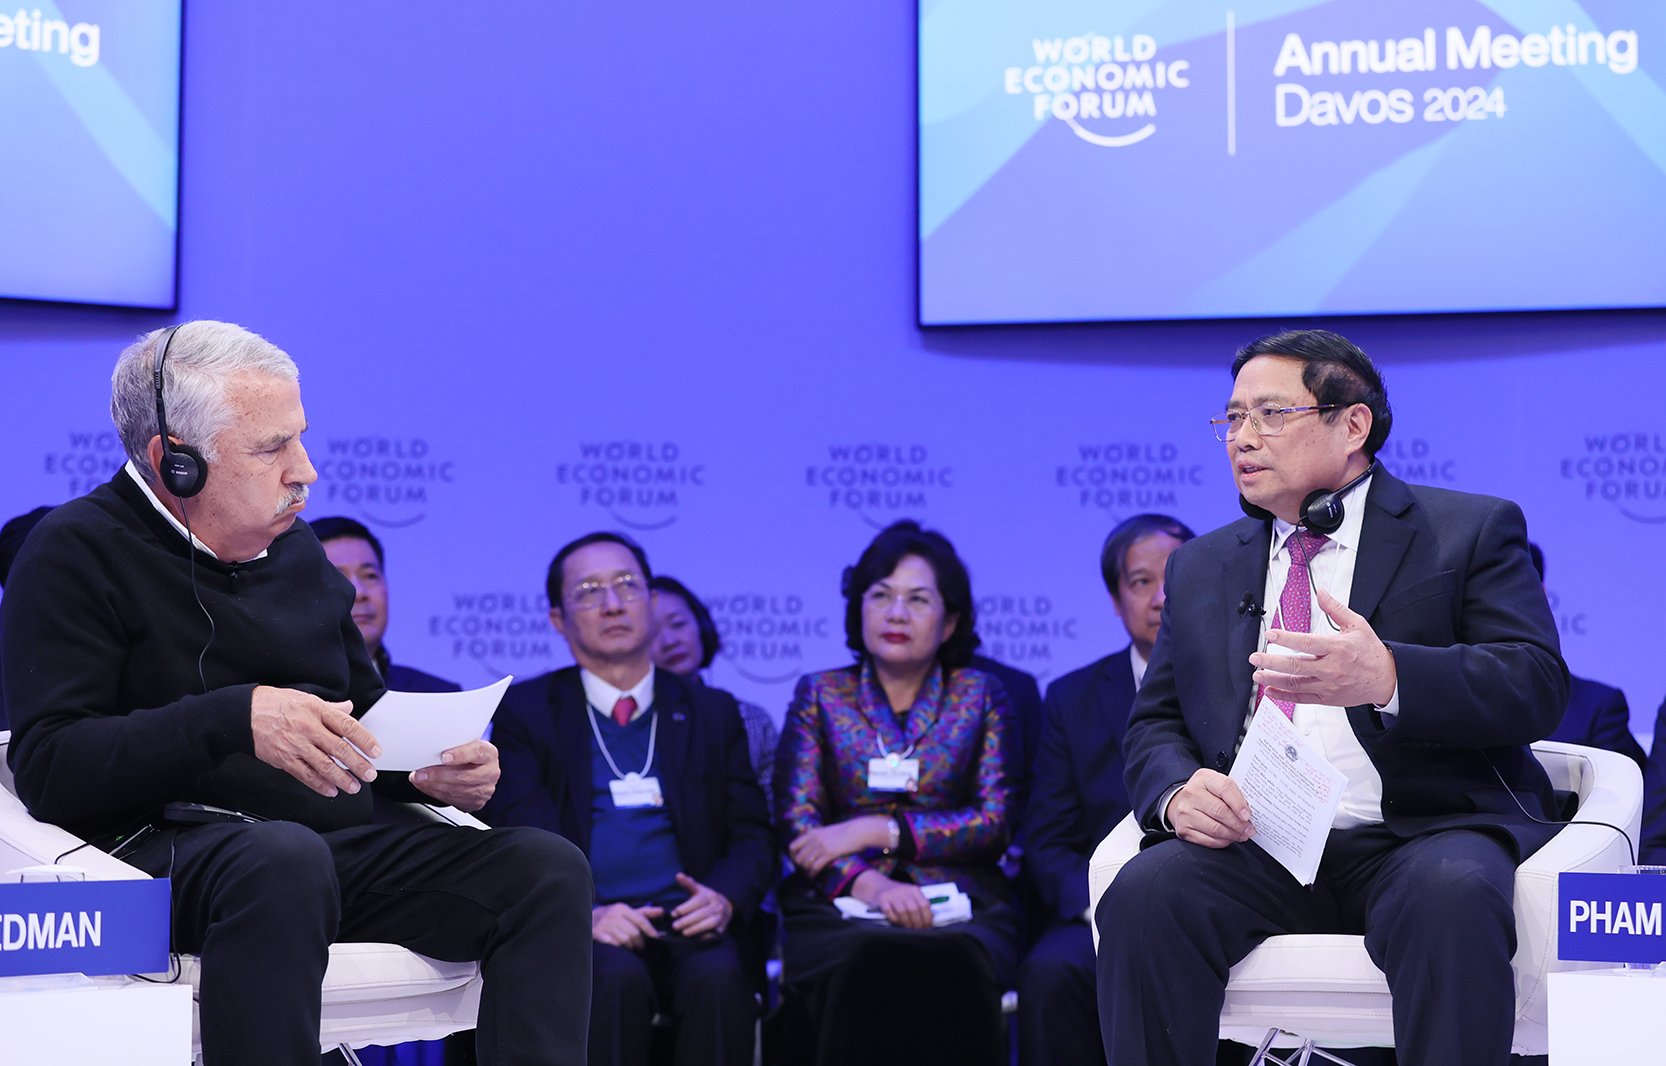 Phiên đối thoại chính sách của Thủ tướng Chính phủ được WEF đề xuất, xác định là một phiên điểm nhấn tại Hội nghị - Ảnh: VGP/Nhật Bắc